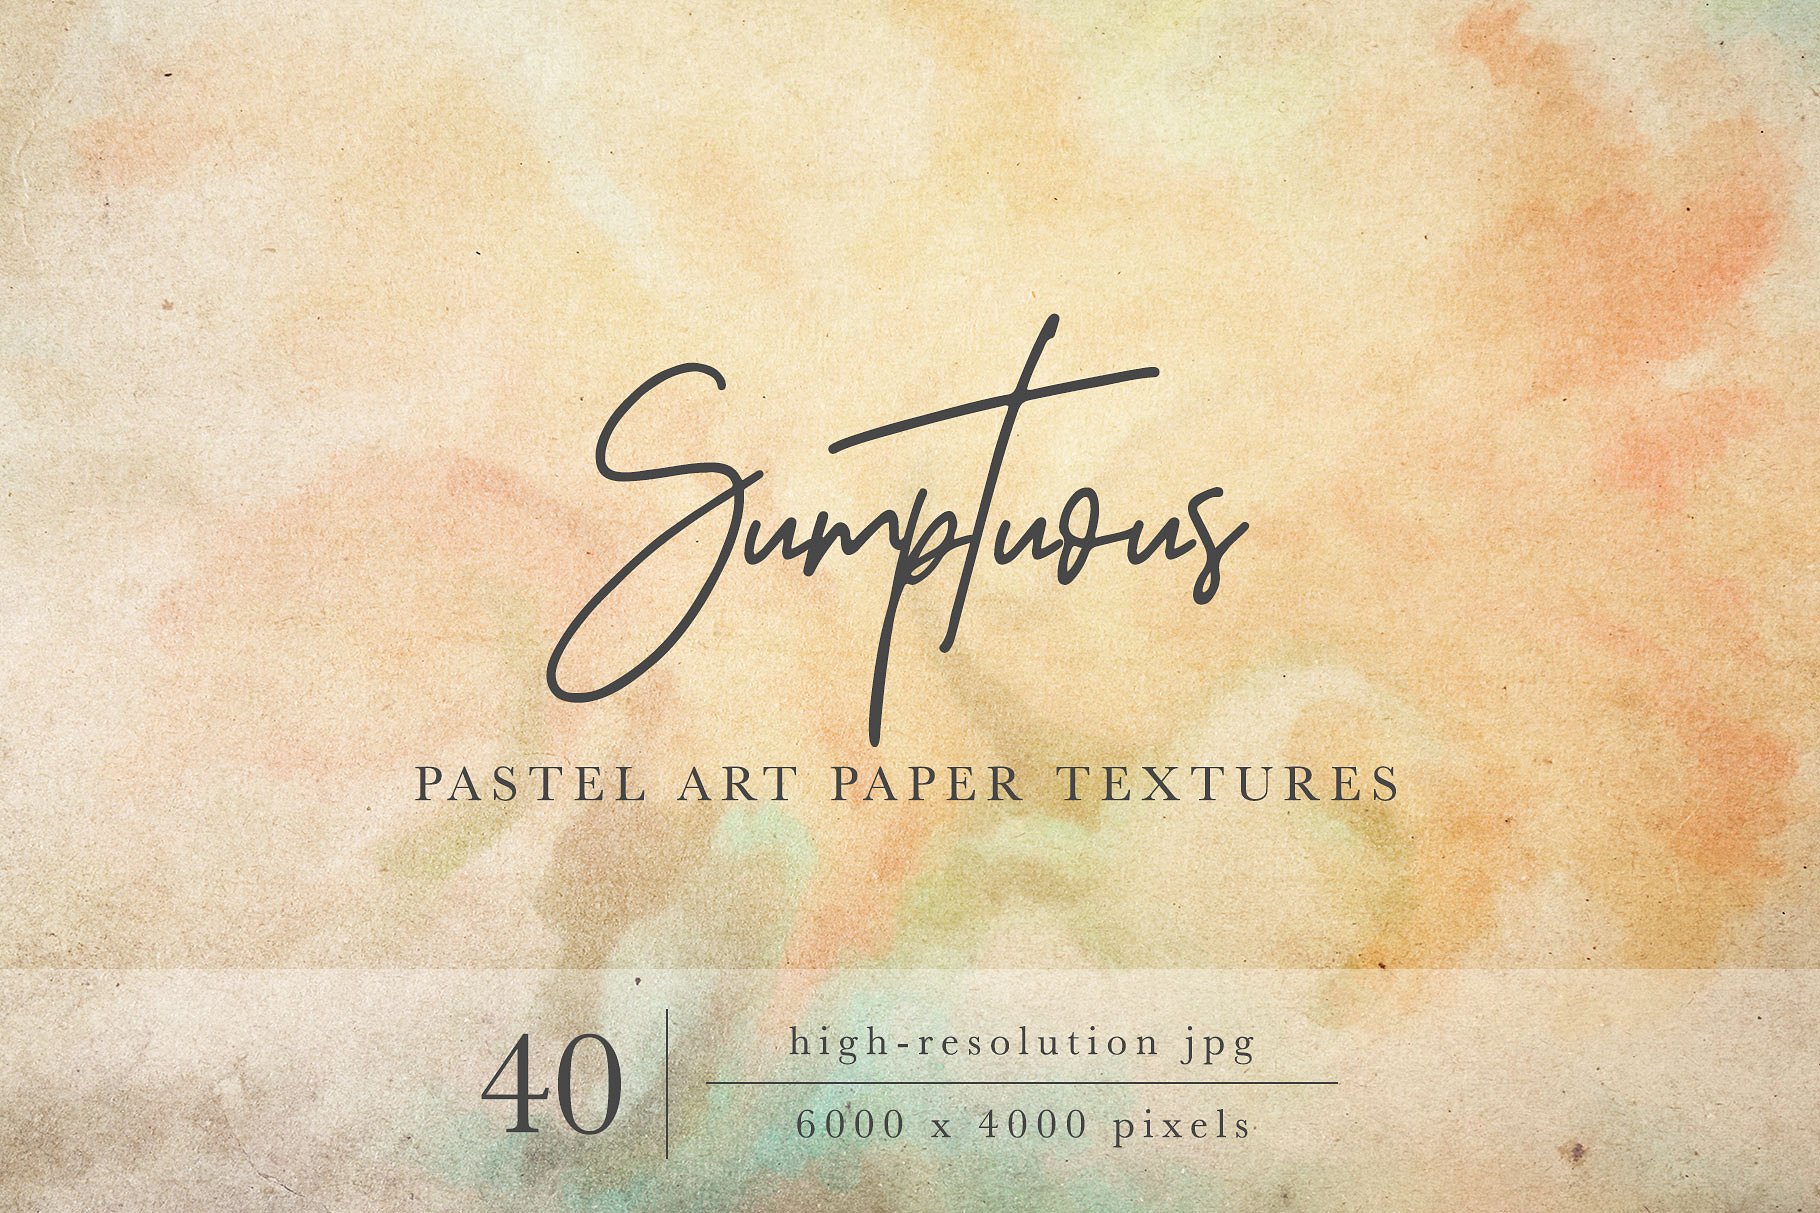 奢华粉画纸纸张纹理 Sumptuous Pastel Paper Textures插图(1)